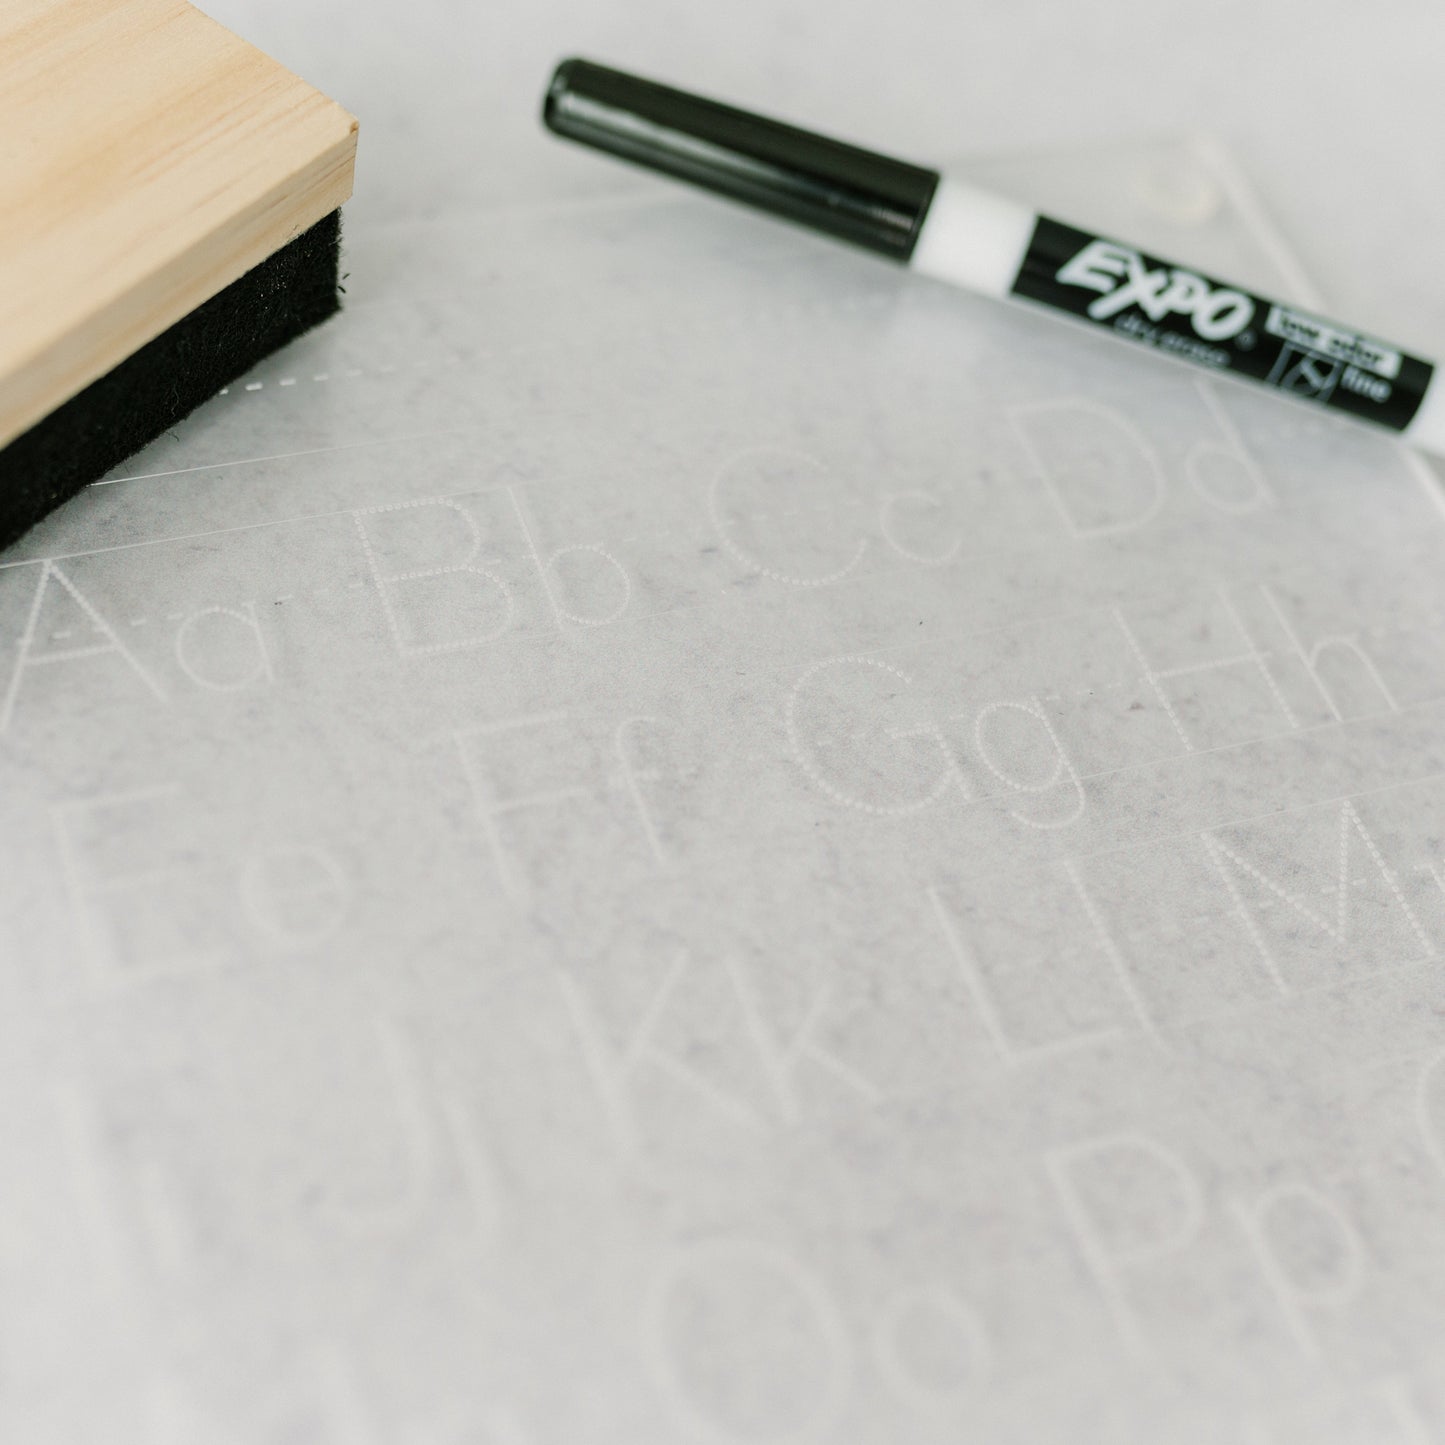 Dry Erase Alphabet Tracing Board